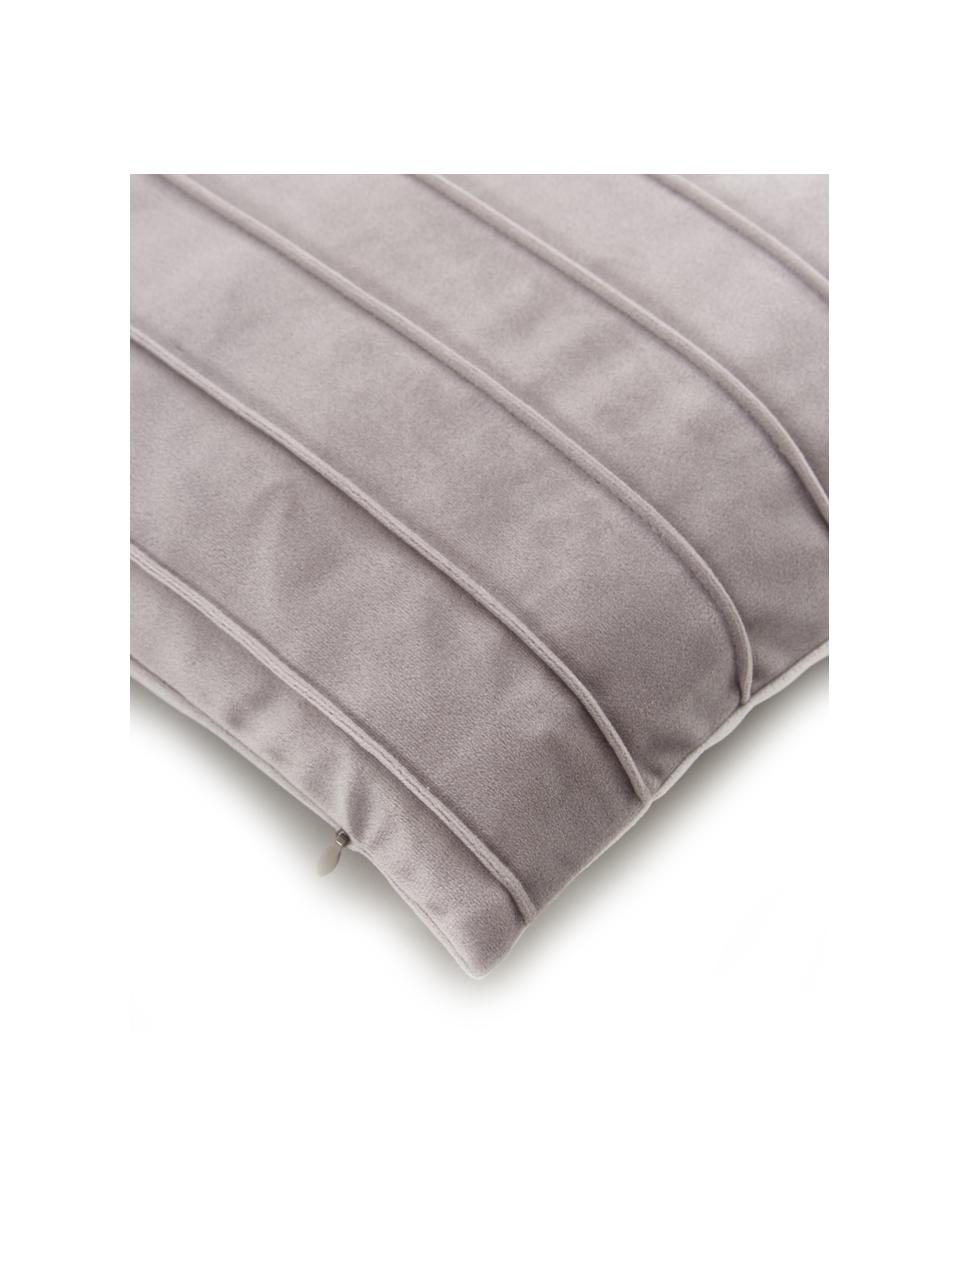 Fluwelen kussenhoes Lola in lichtgrijs met structuurpatroon, Fluweel (100% polyester), Grijs, B 40 x L 40 cm